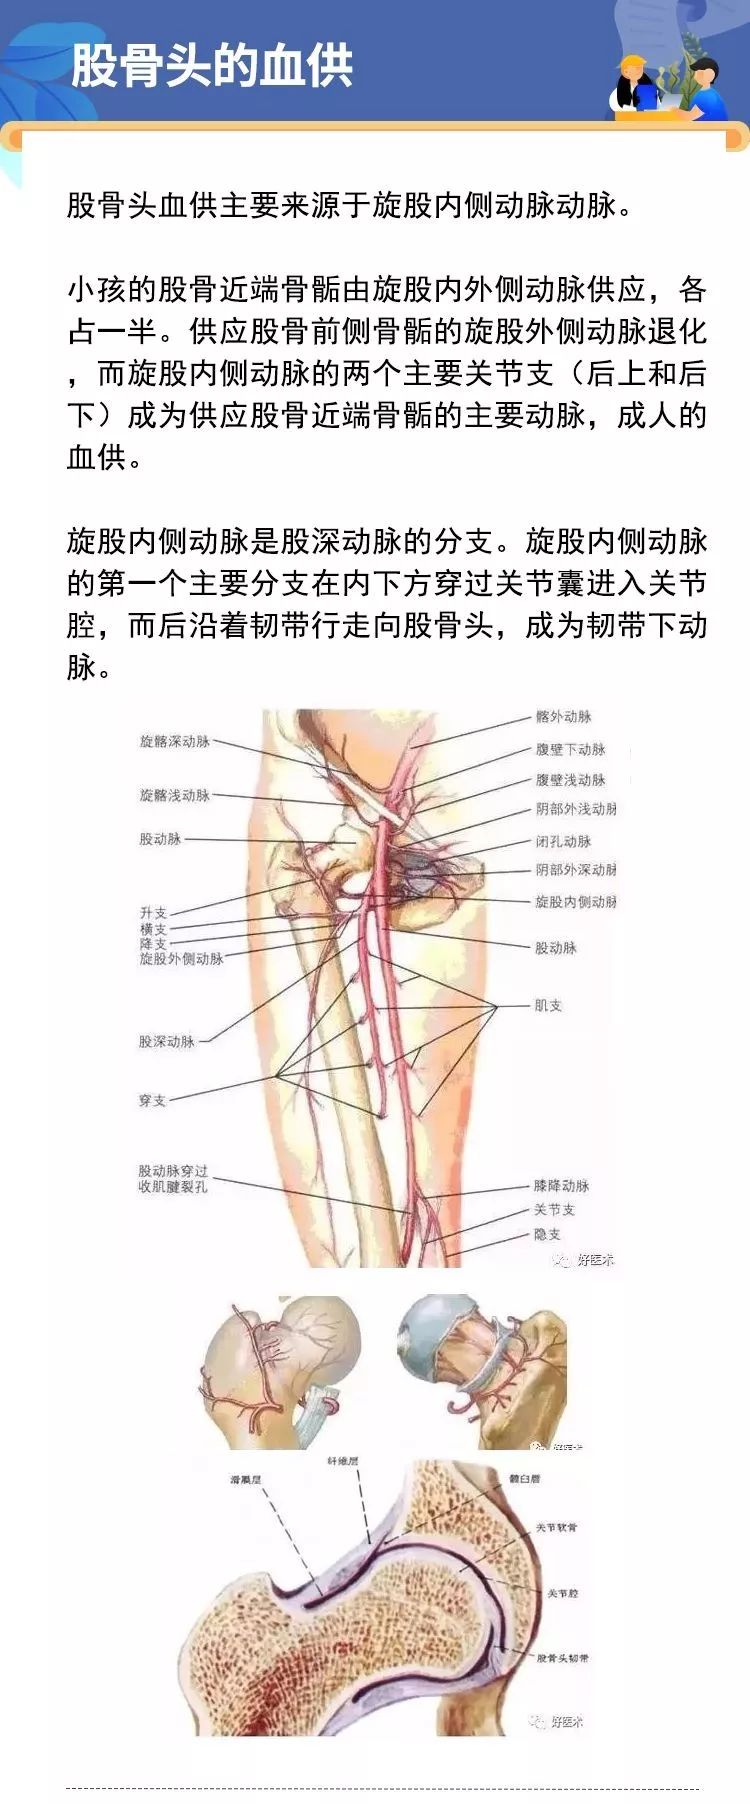 2,股骨头的血供1,髋关节的解剖结构